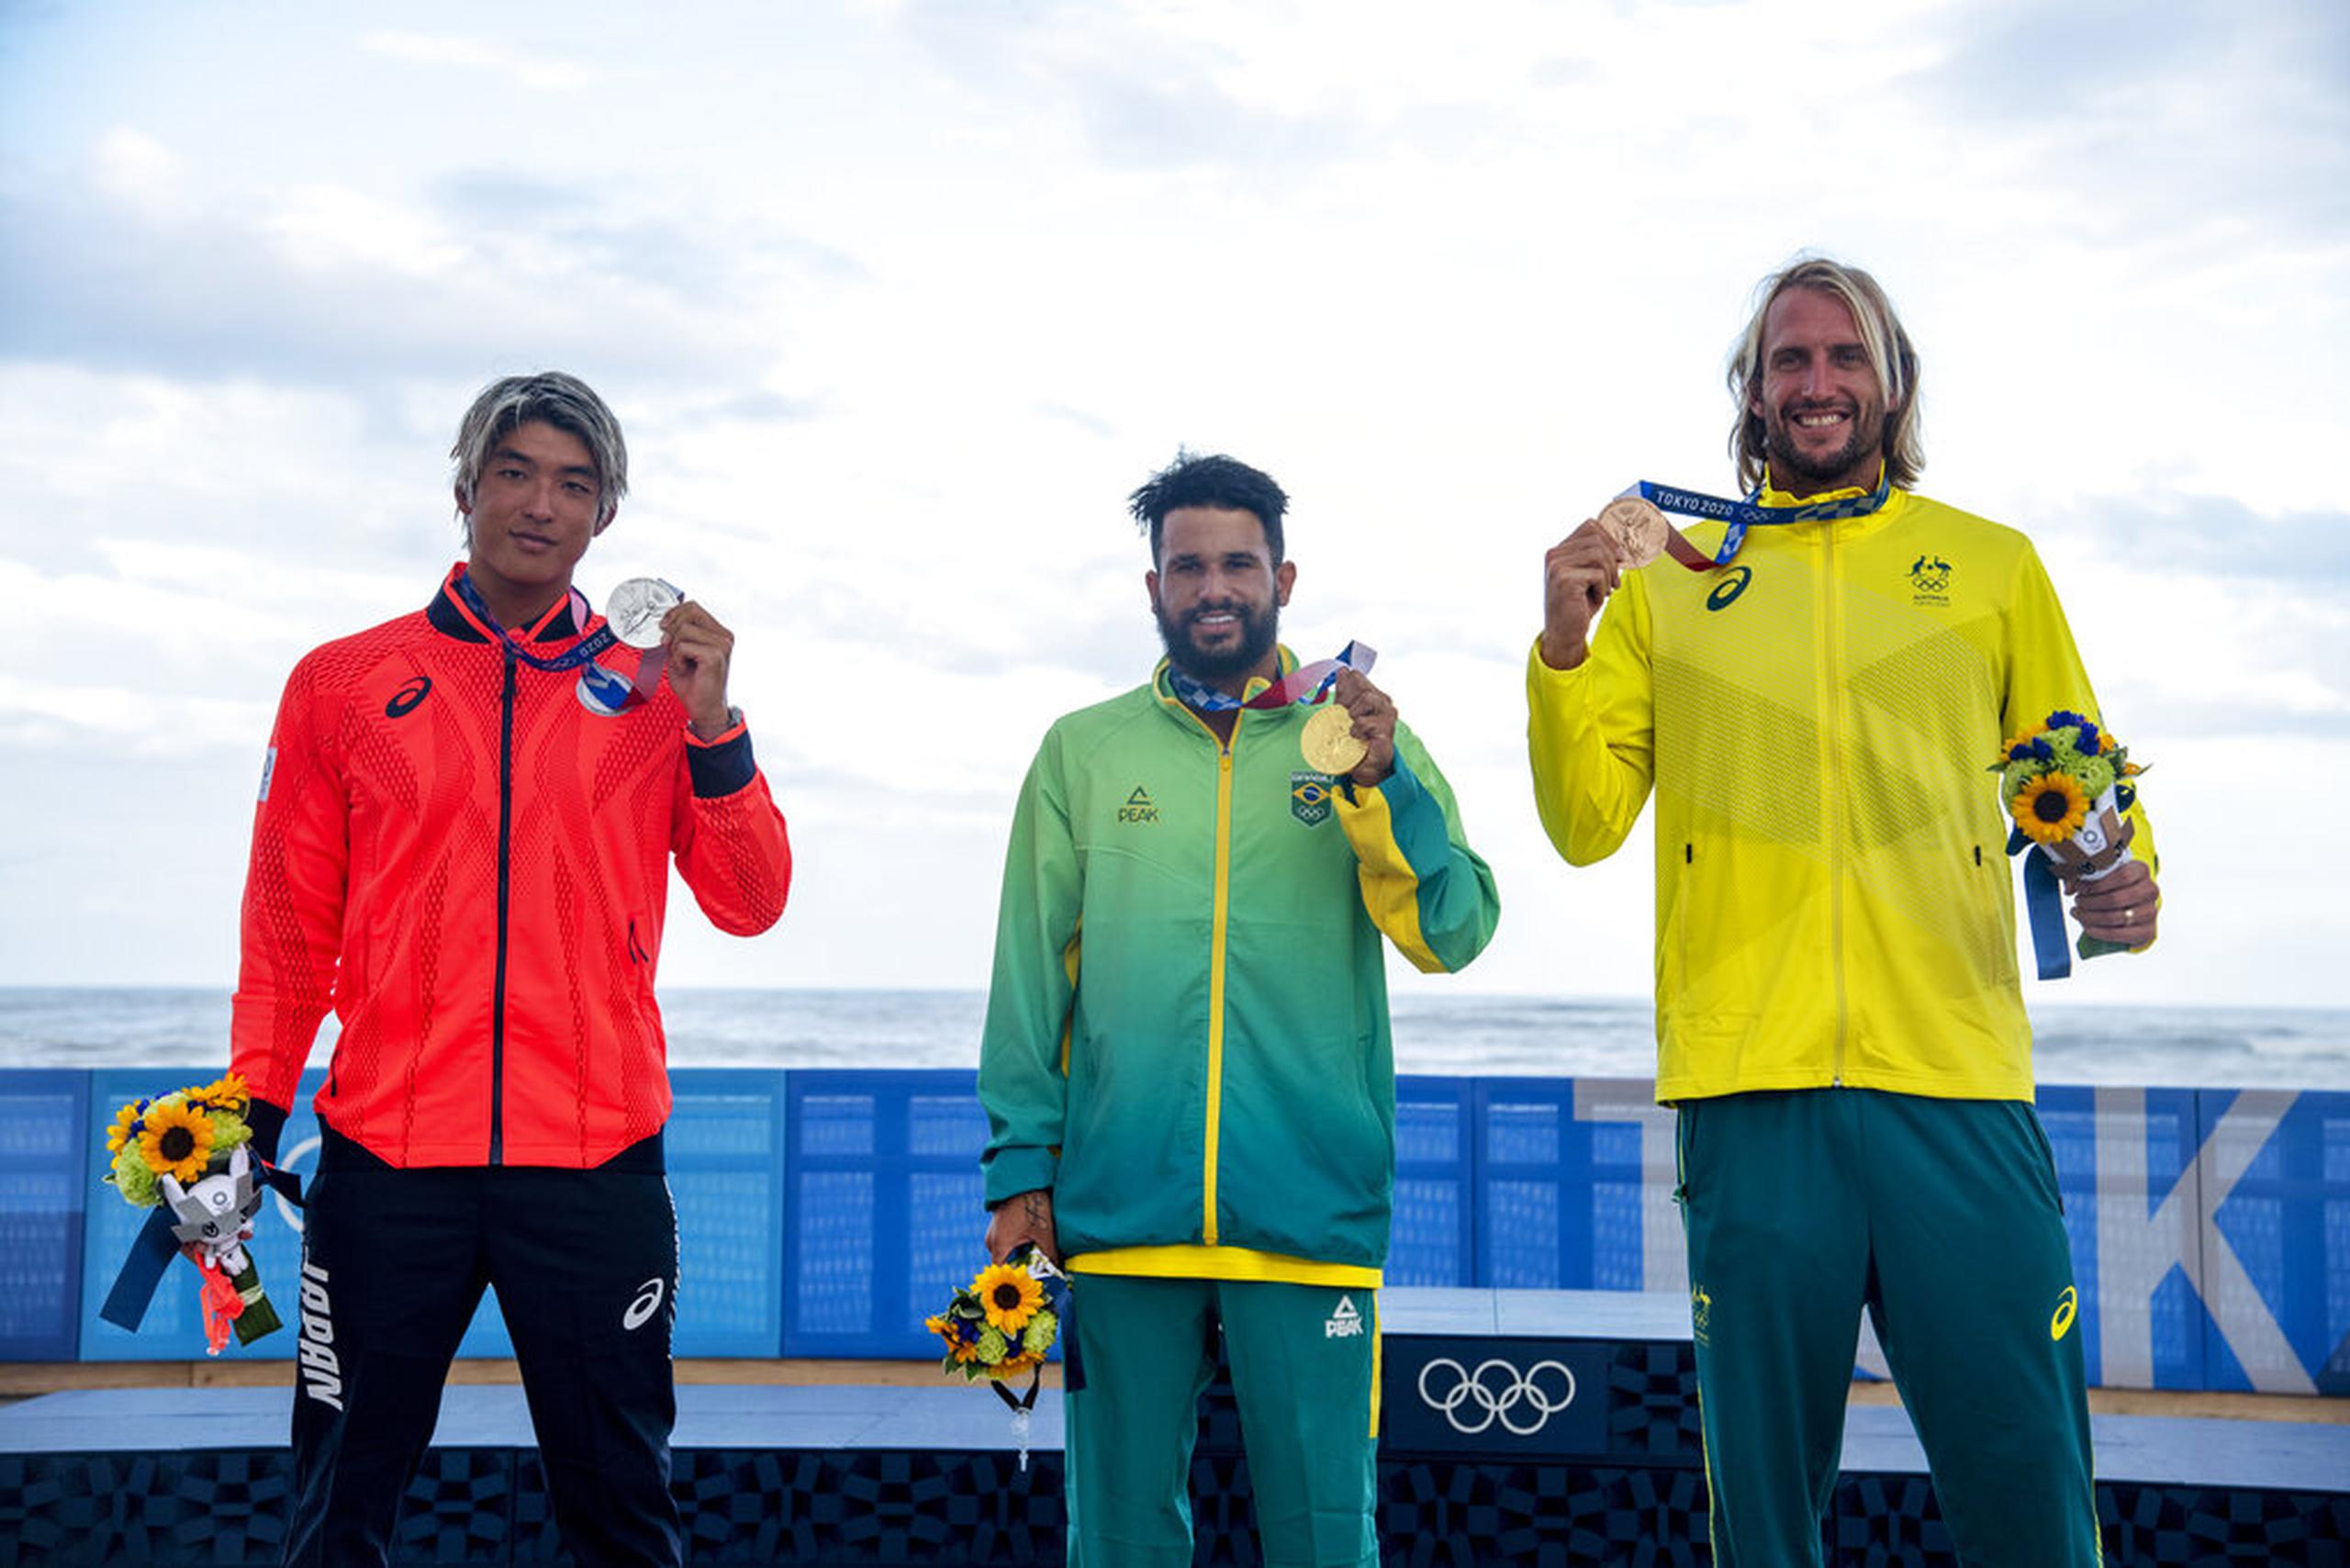 Ítalo Ferreira de Brasil con la medalla de oro, Kanoa Igarashi de Japón con la medalla de plata, y Owen Wright de Australia con la medalla de bronce, posan en la competencia masculina de surf en los Juegos Olímpicos 2020, el 27 de julio de 2021, en la playa Tsurigasaki, en Ichinomiya, Japón.